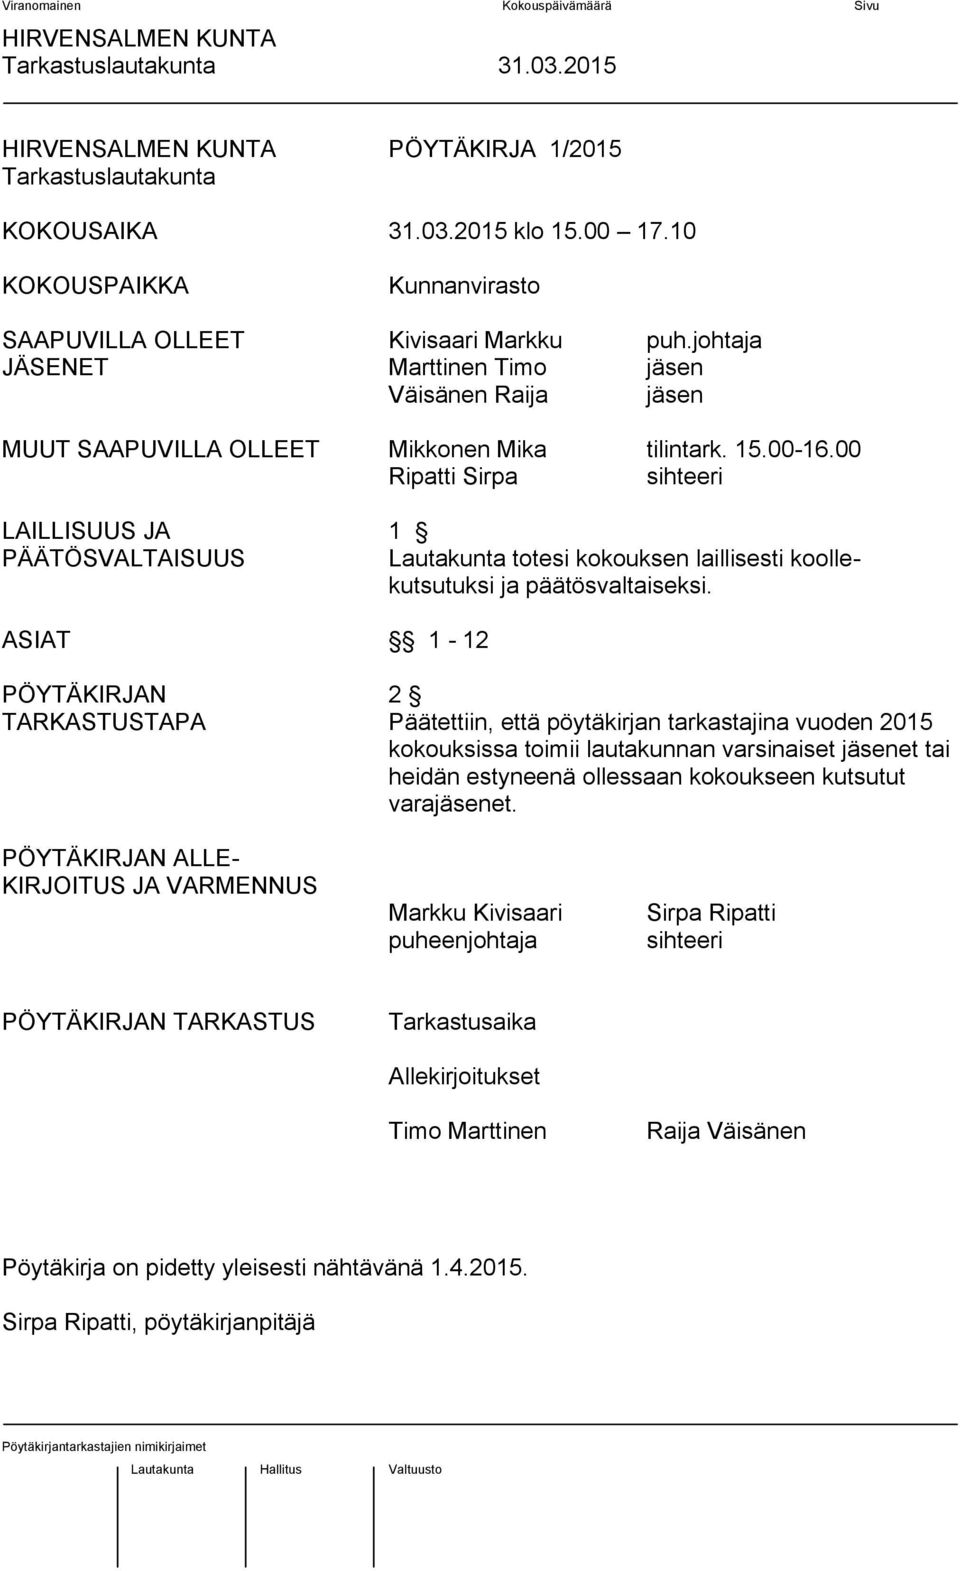 00 Ripatti Sirpa sihteeri LAILLISUUS JA 1 PÄÄTÖSVALTAISUUS Lautakunta totesi kokouksen laillisesti koollekutsutuksi ja päätösvaltaiseksi.